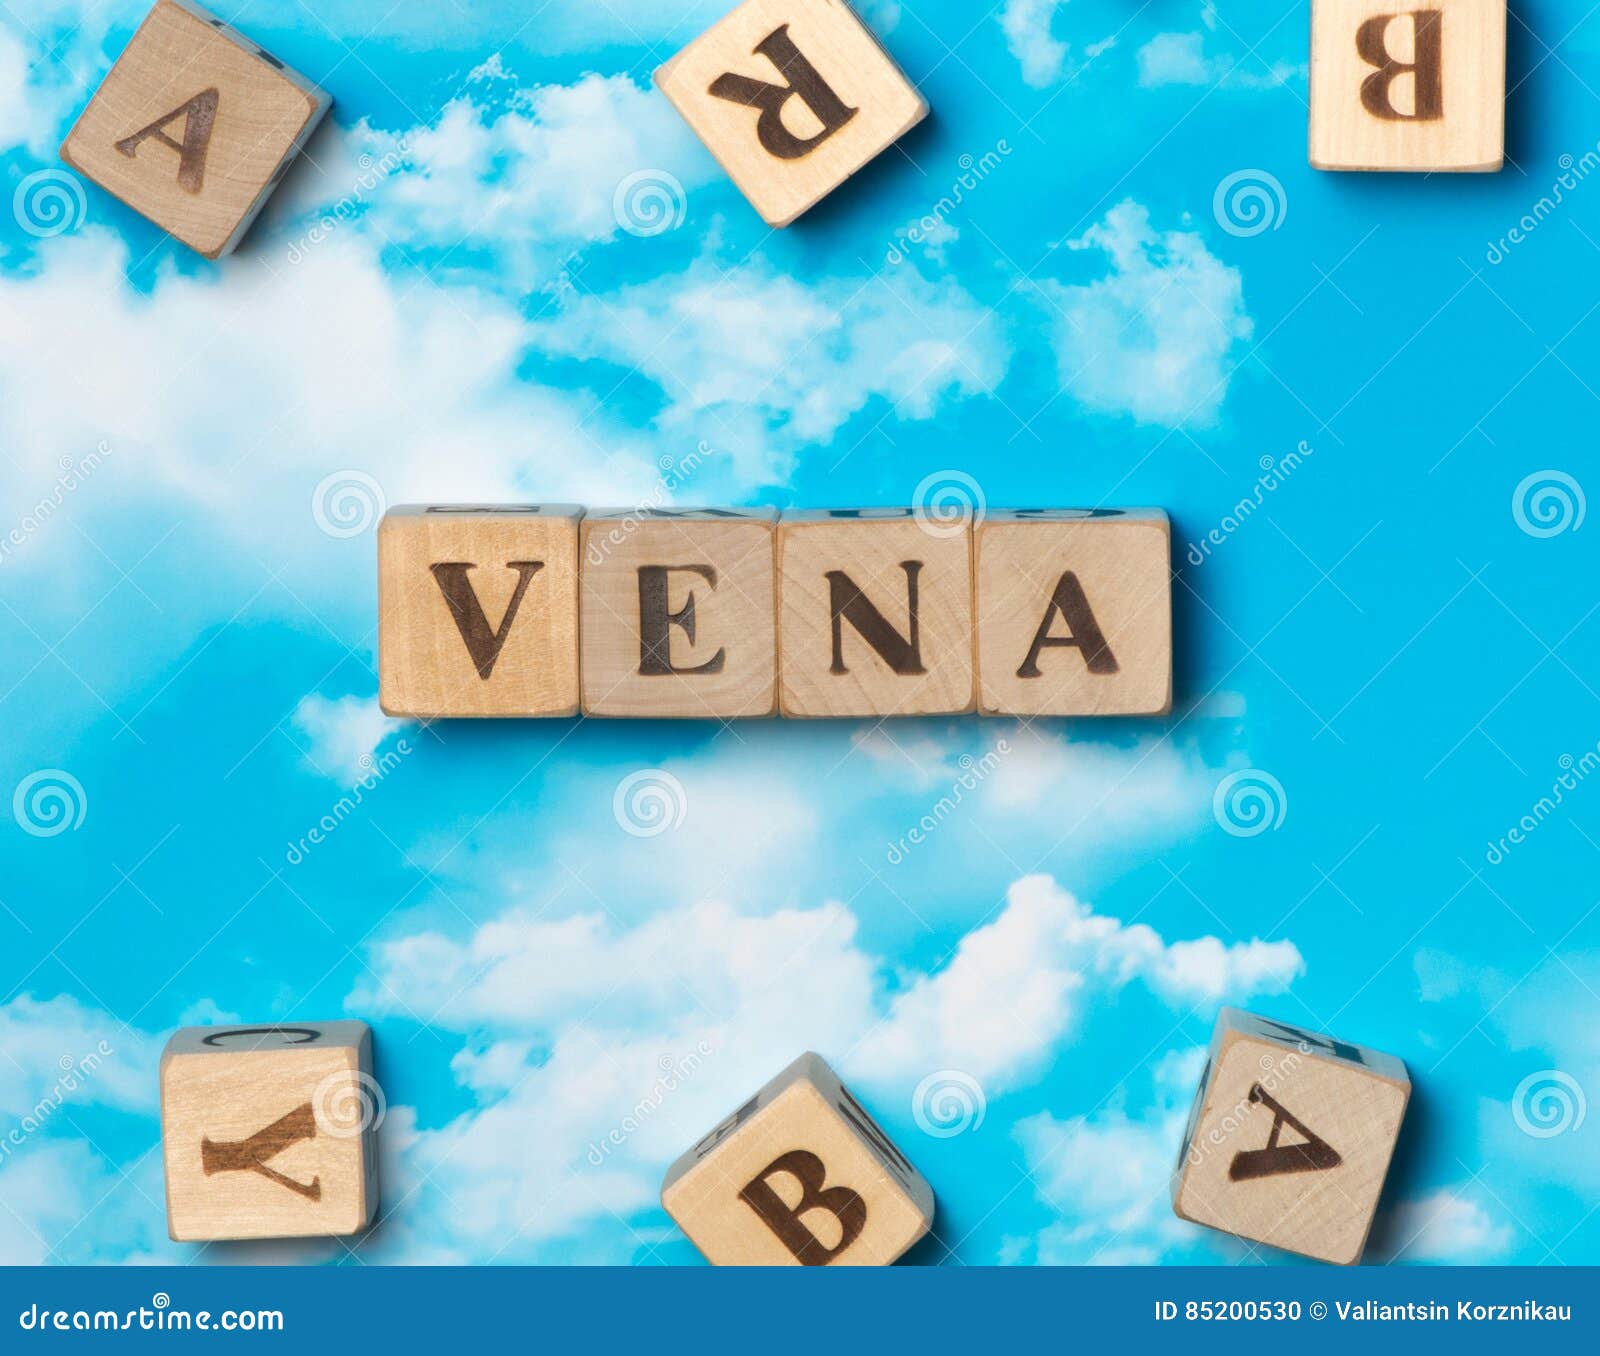 the word vena